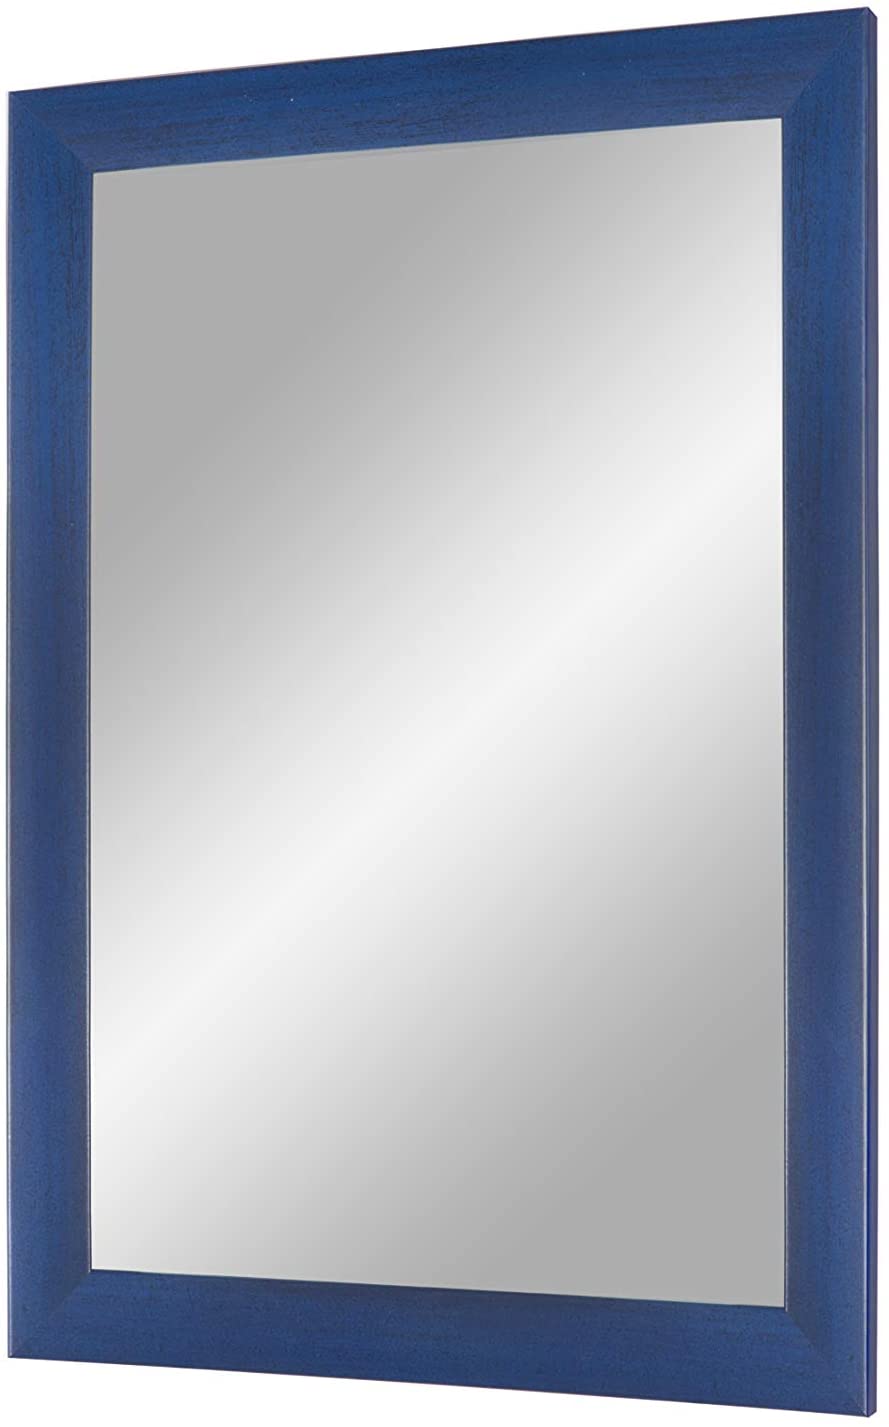 EXCLUSIV Wandspiegel nach Maß (Dunkelblau-gewischt), Maßgefertigter Spiegelrahmen inkl. Spiegel und stabiler Rückwand mit Aufhängern